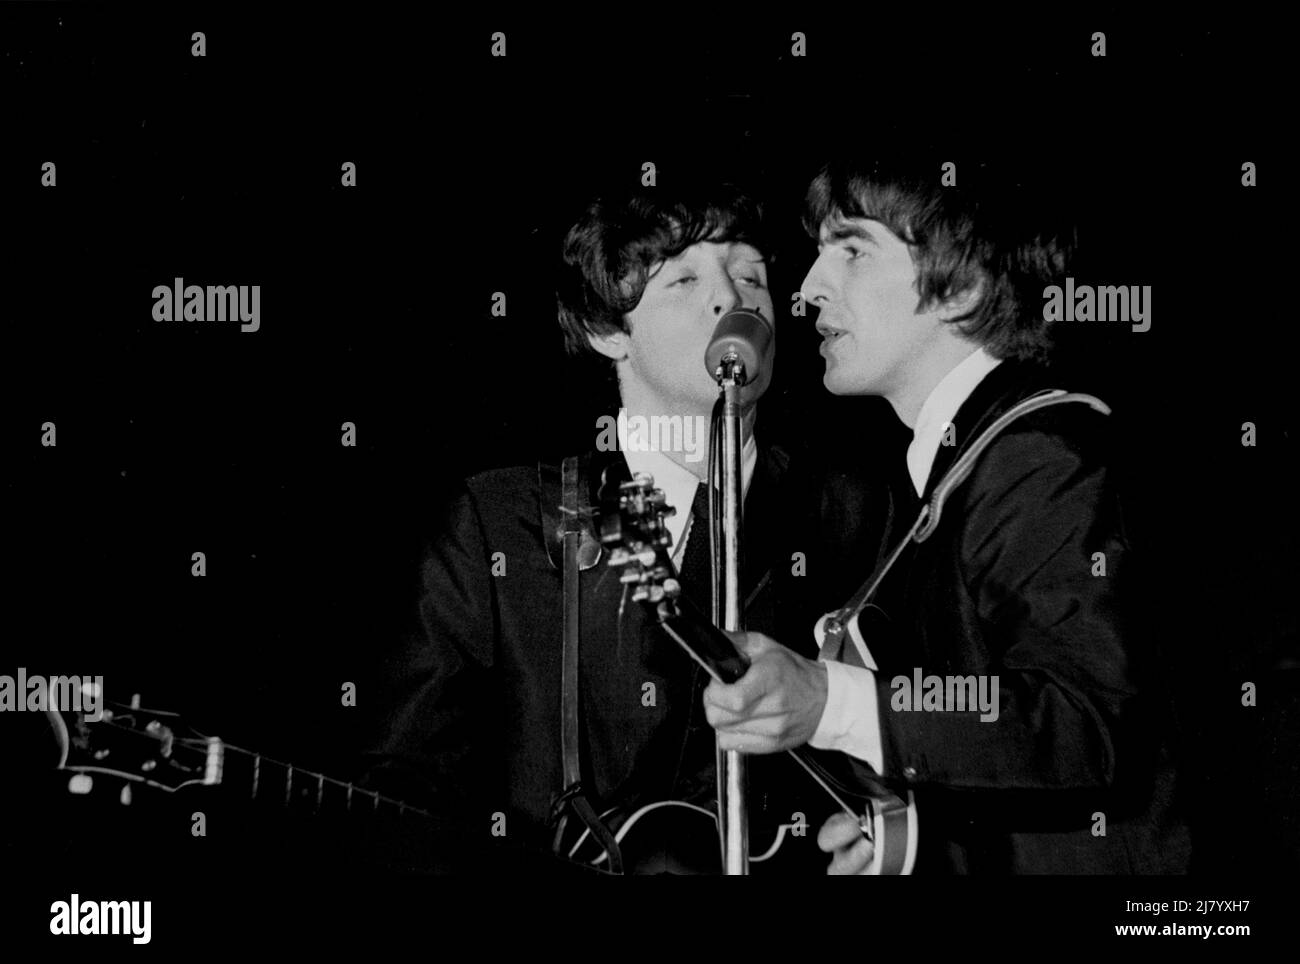 Paul McCartney y George Harrison, The Beatles, 1964 Foto de stock